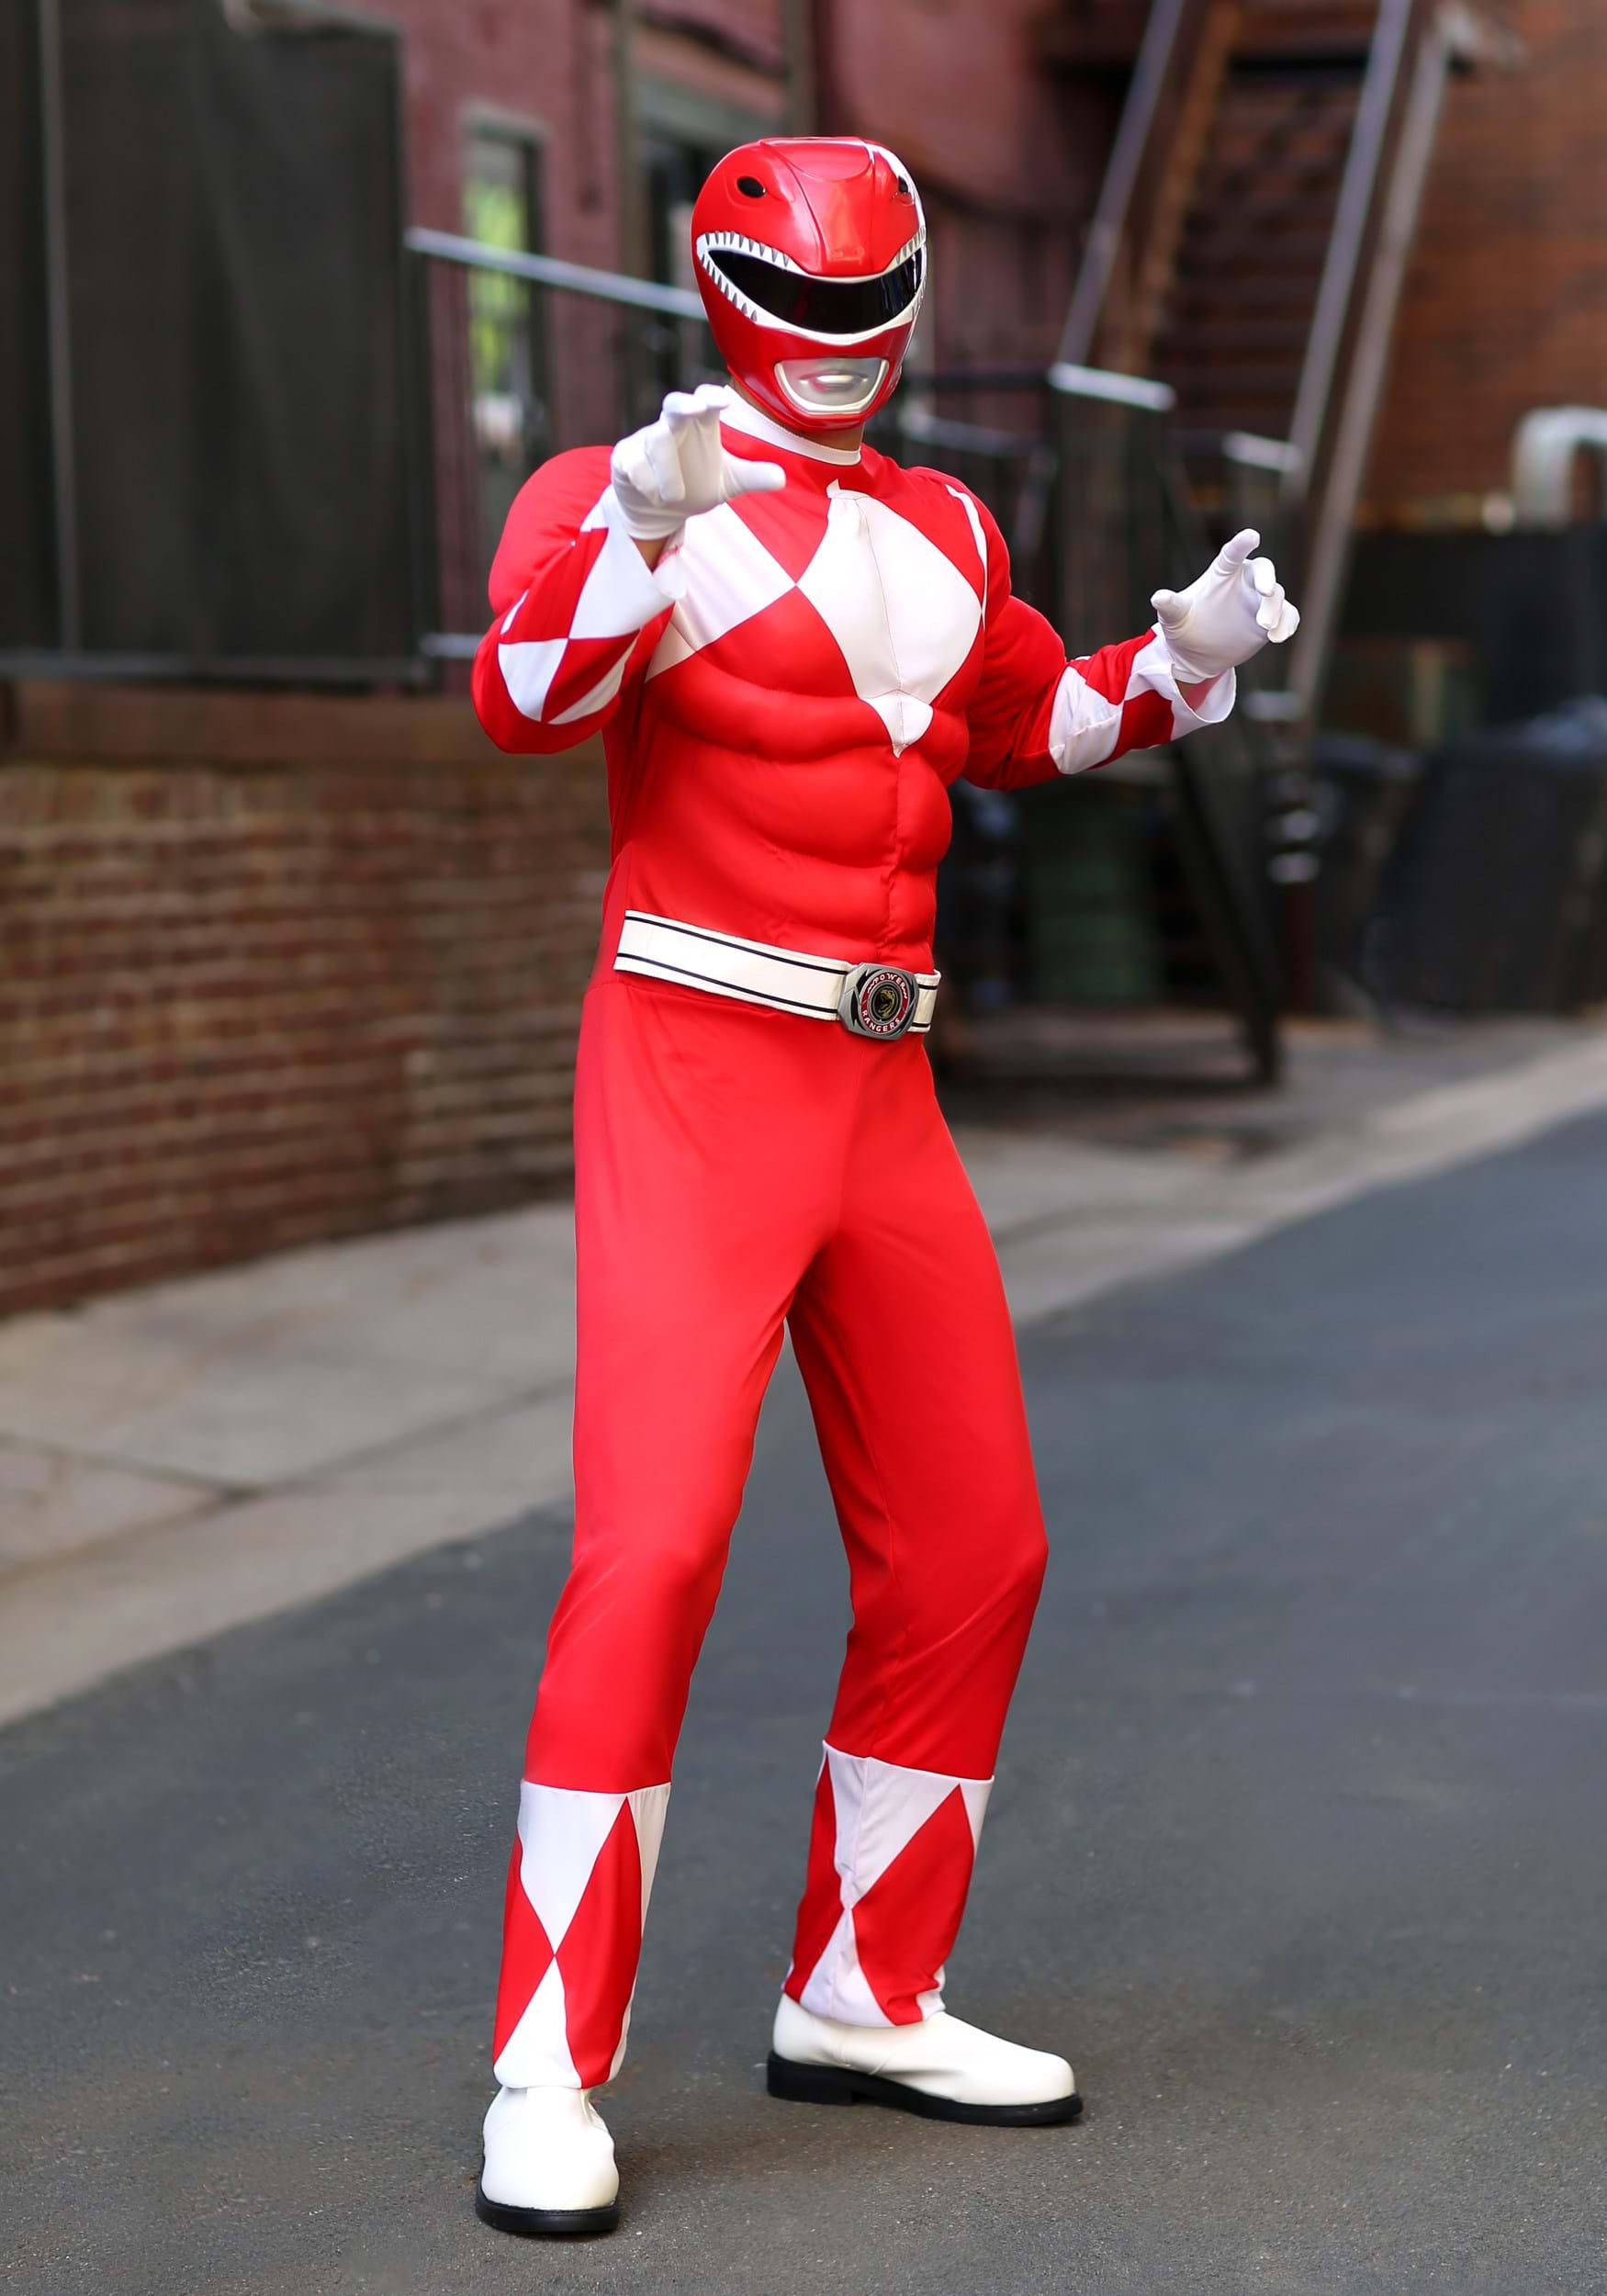 Mens Power Ranger Costume - www.inf-inet.com